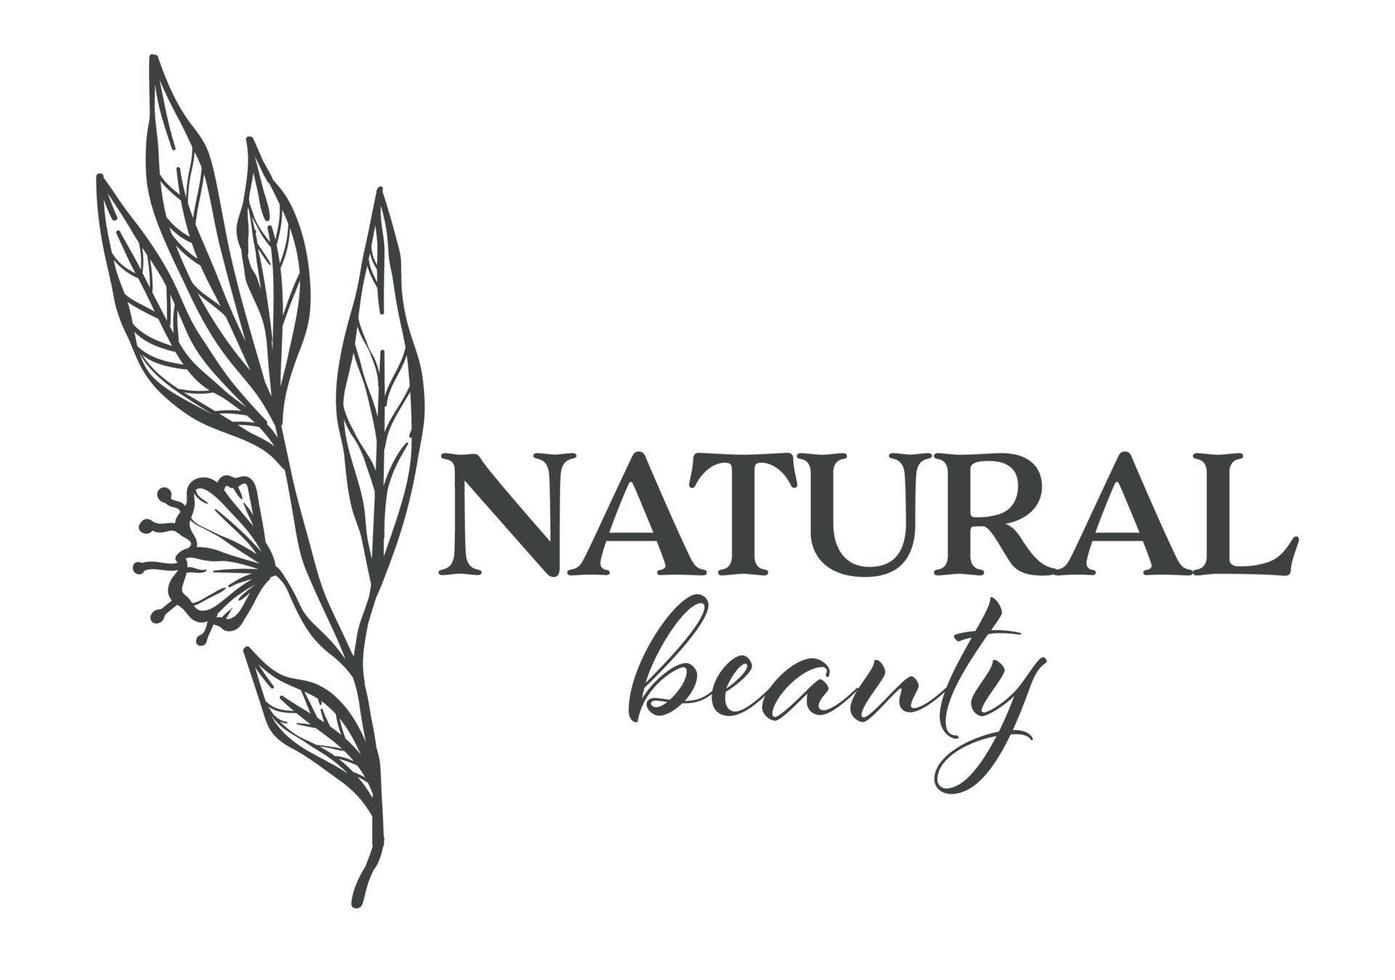 Natural beauty florist shop assortment monochrome sketch outline vector